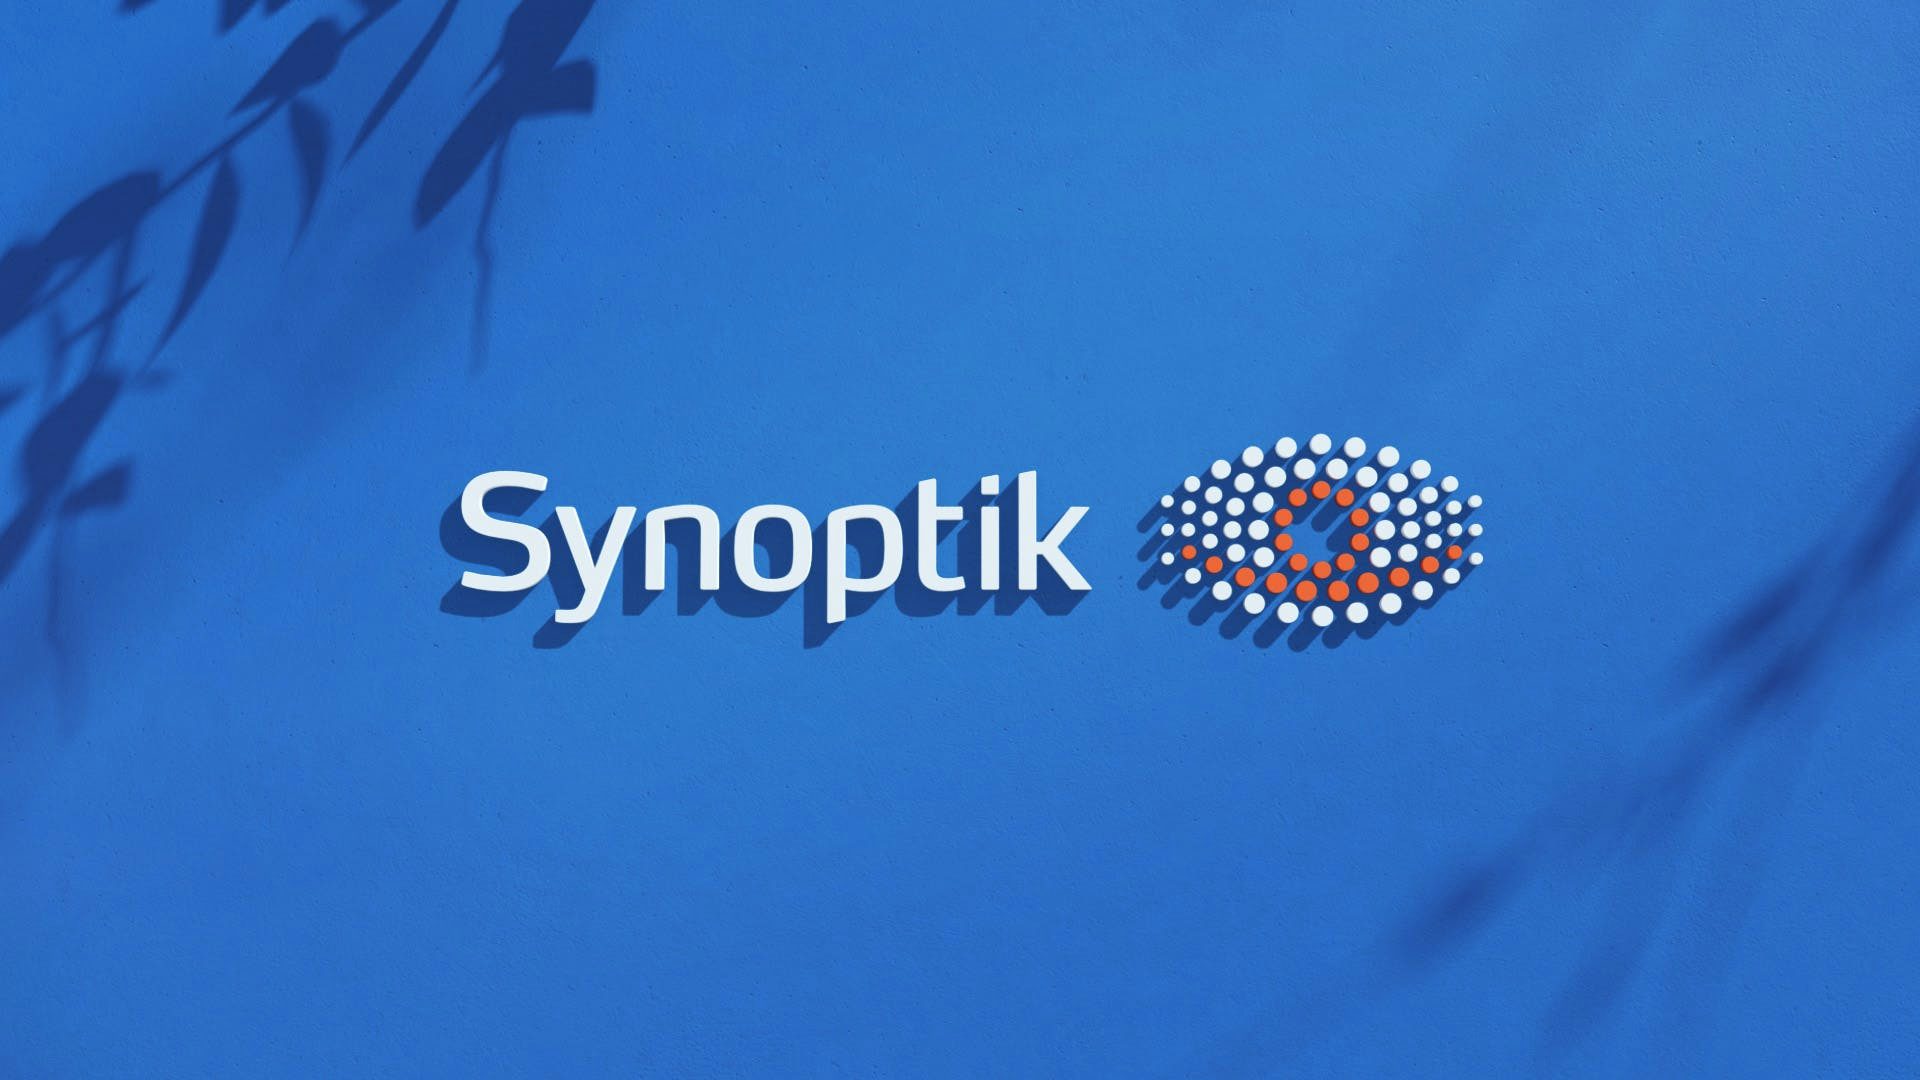  Synoptik-logotypen extrudad från en blå vägg. Skuggor av grenar på väggen.